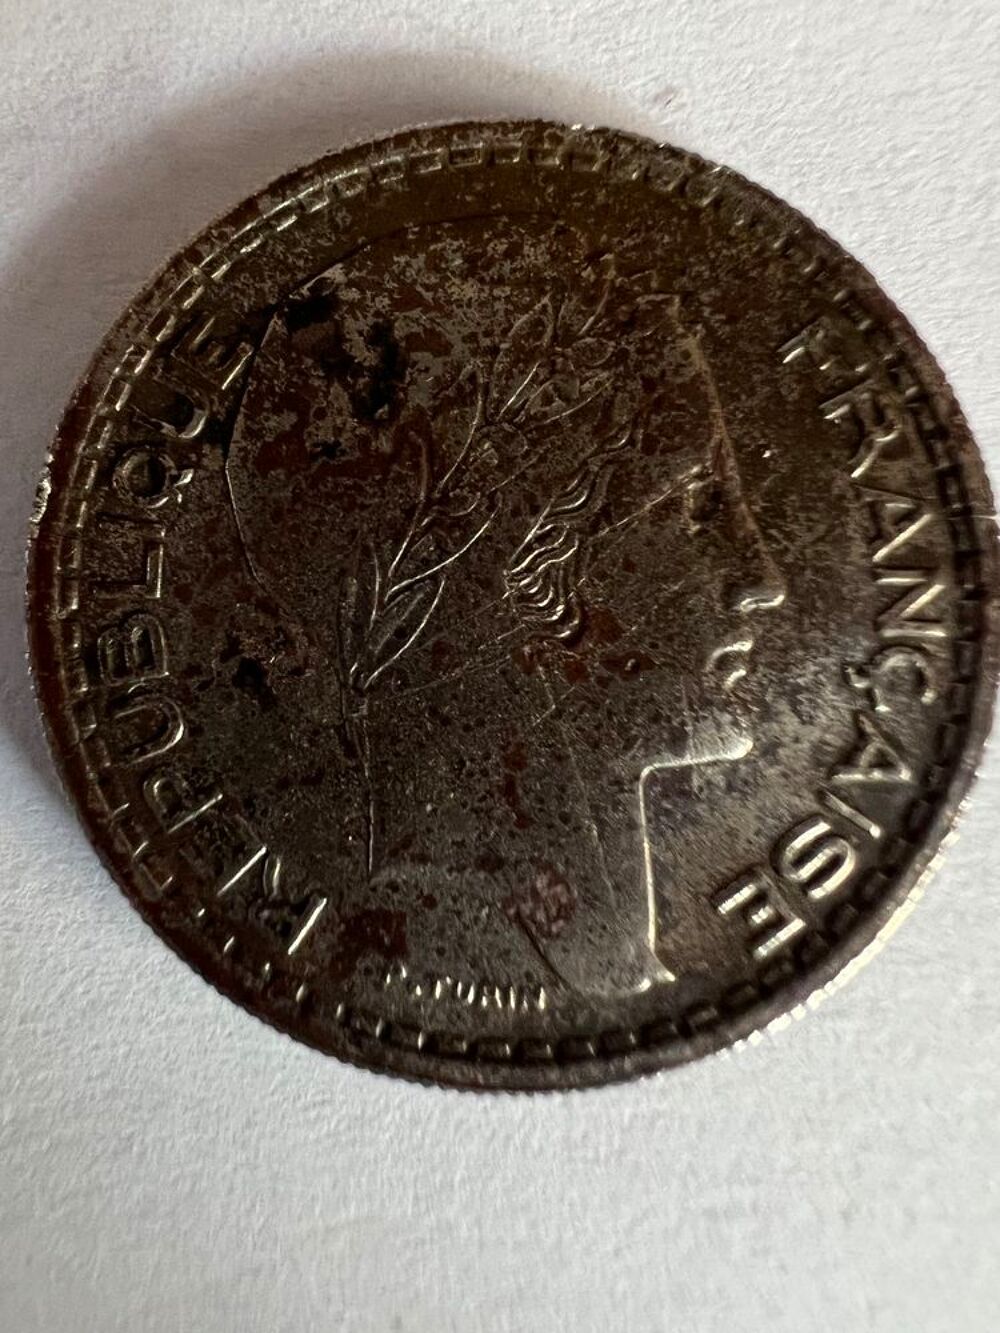 10 Francs de Turin 1948. 